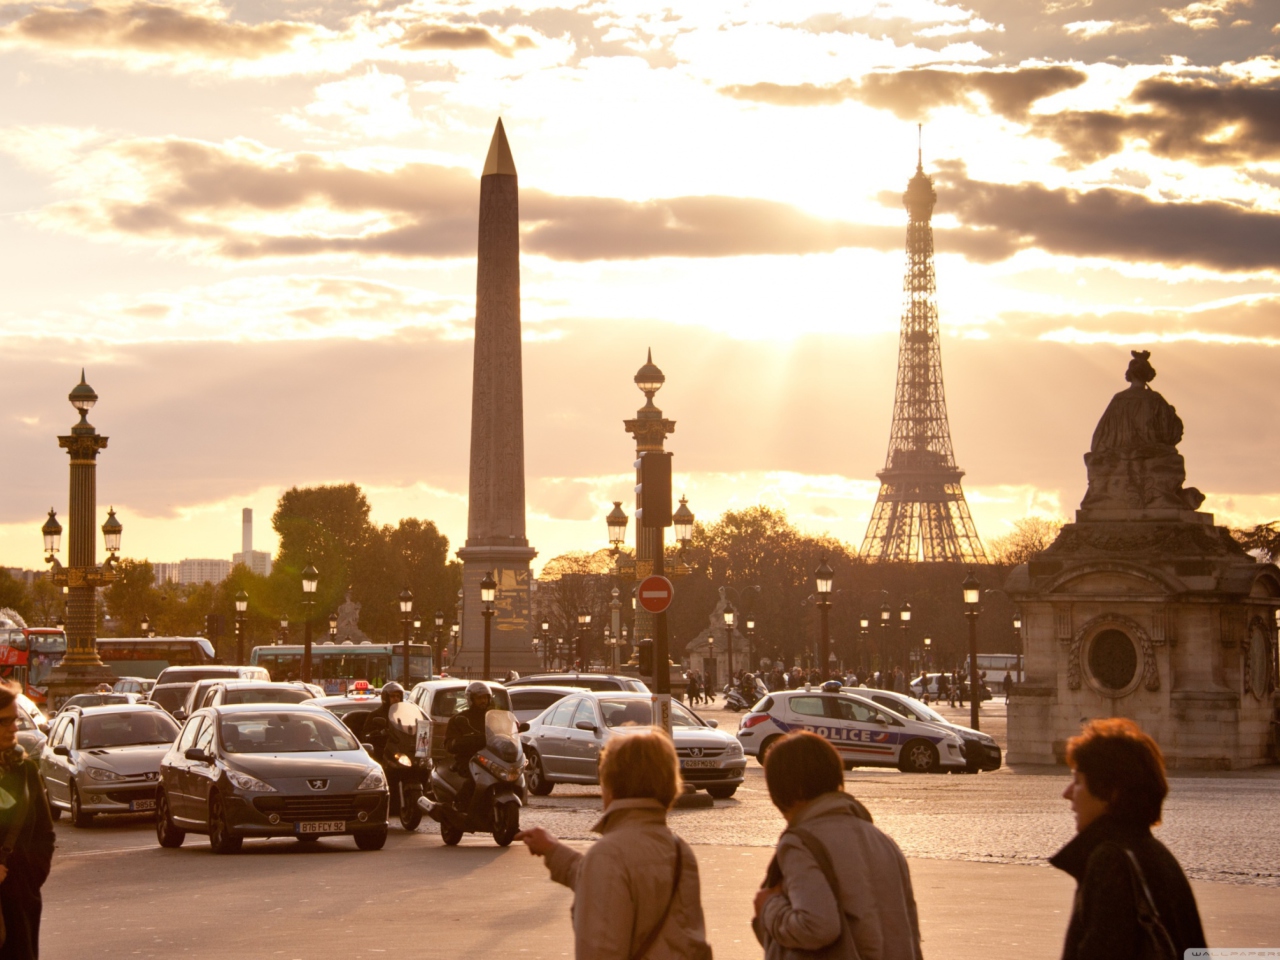 Das Place De La Concorde Paris Wallpaper 1280x960